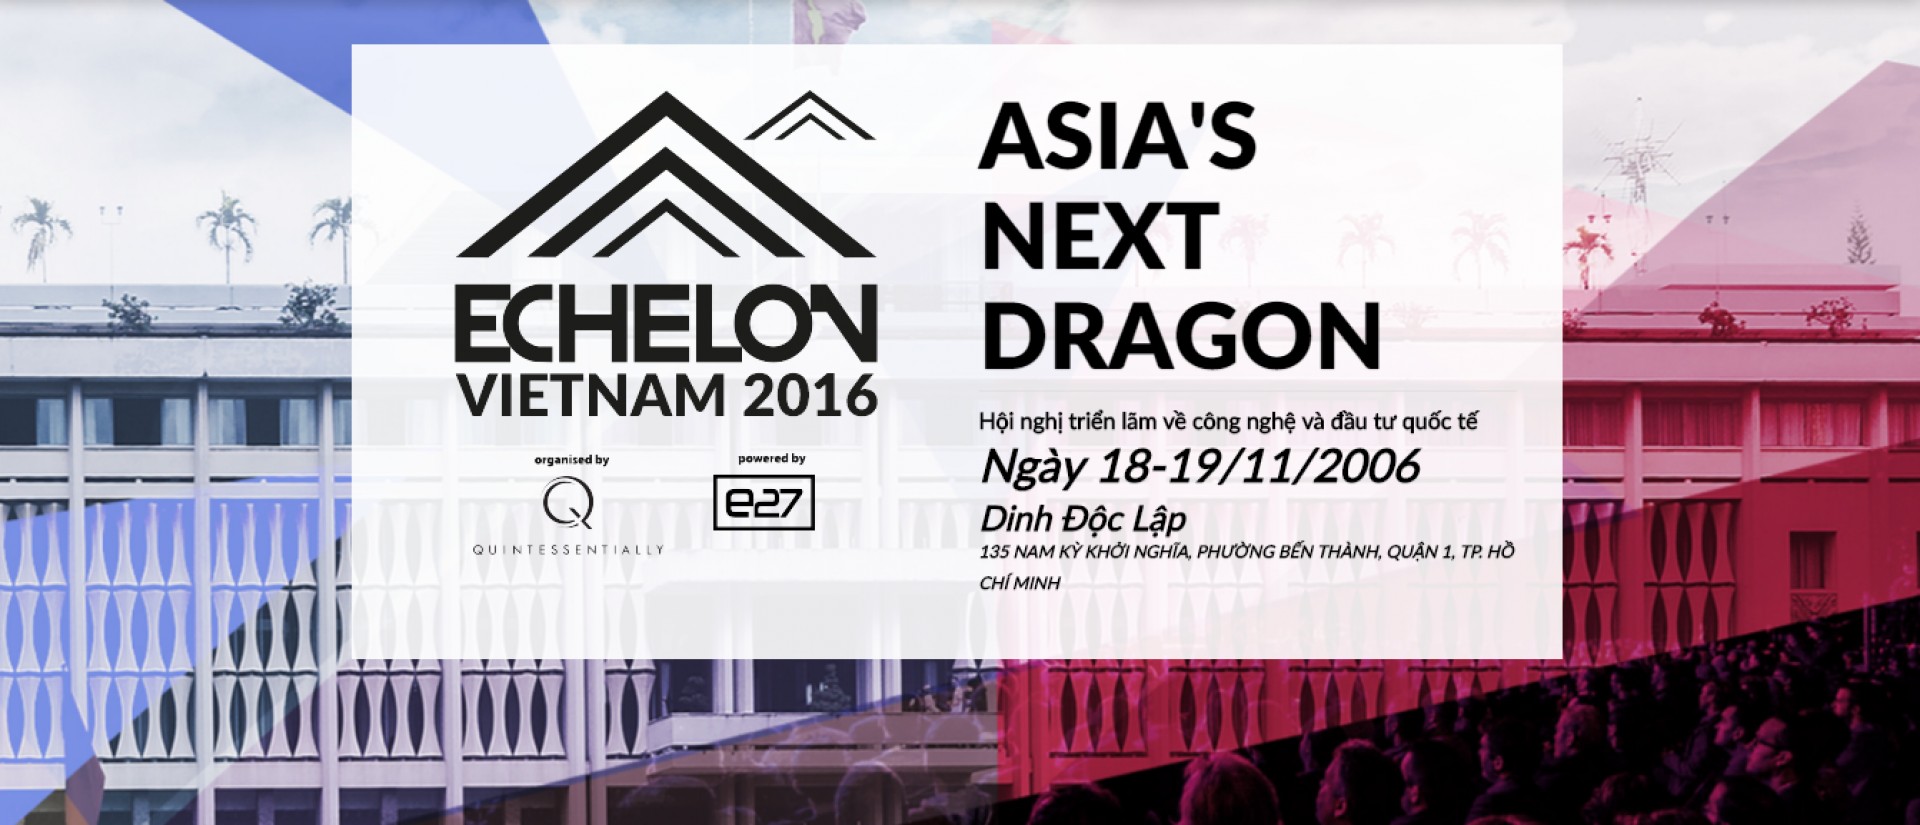 ASIA'S NEXT DRAGON - Hội nghị triển lãm về công nghệ và đầu tư quốc tế